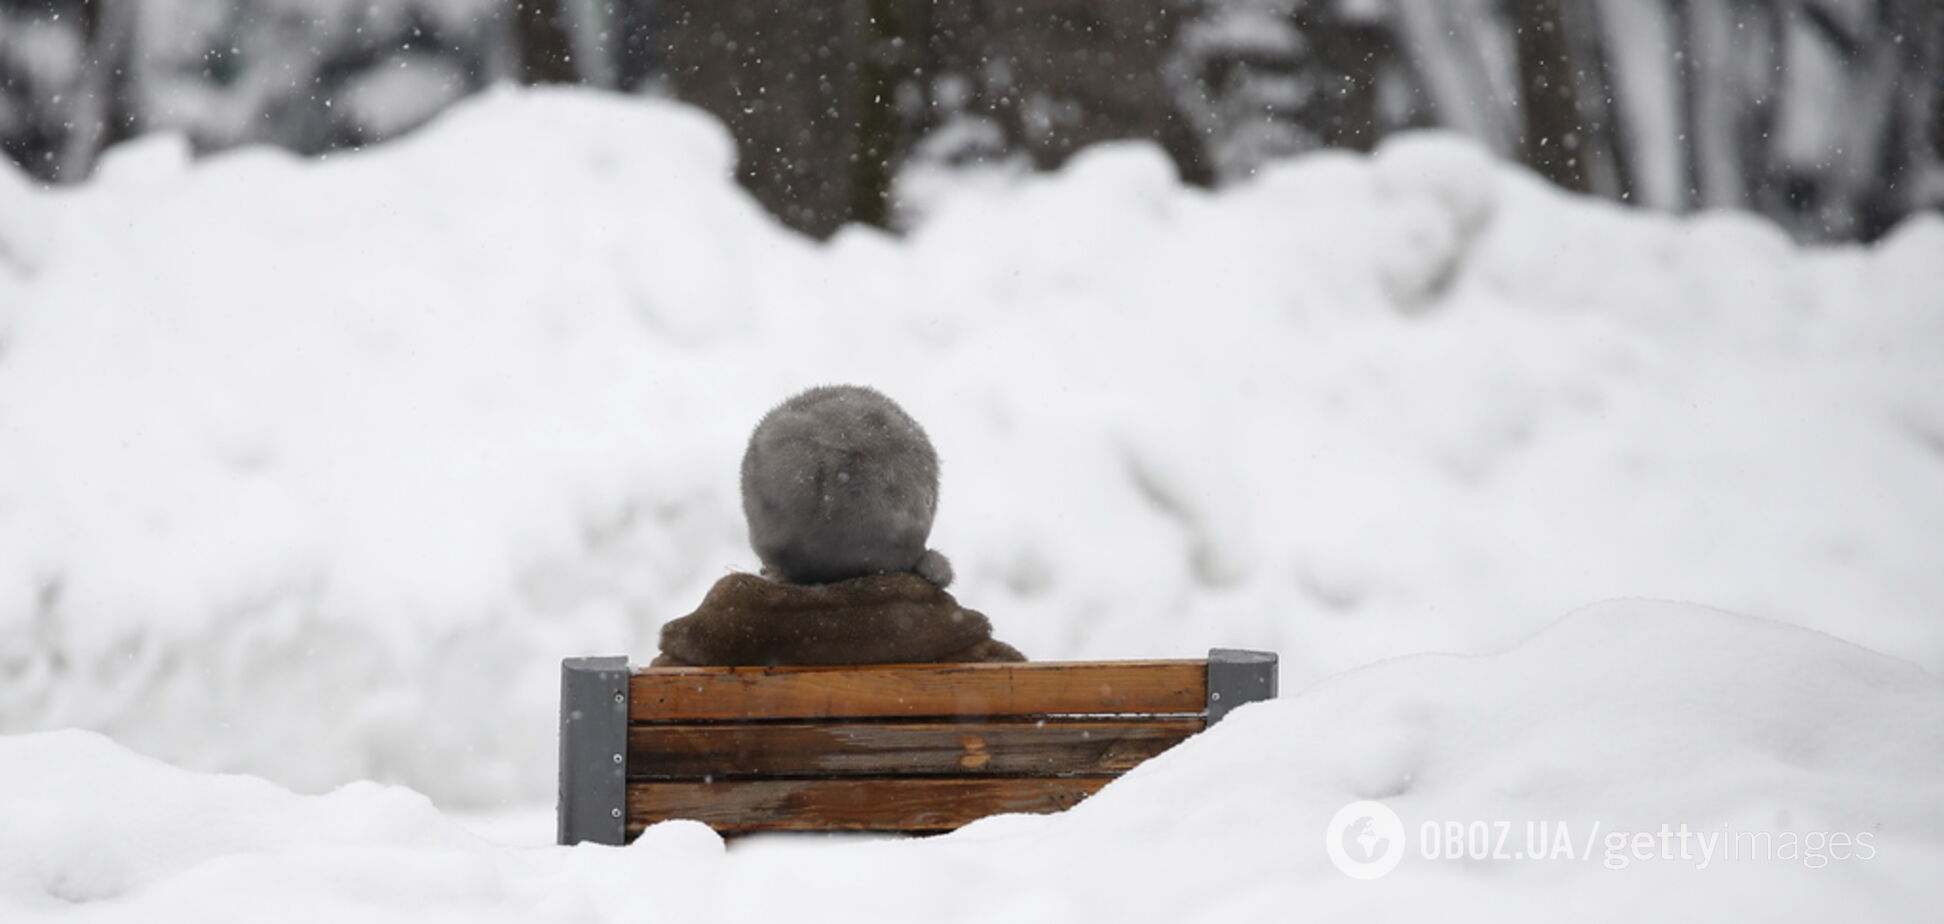  Мороз удержится: синоптики уточнили прогноз на День влюбленных в Украине